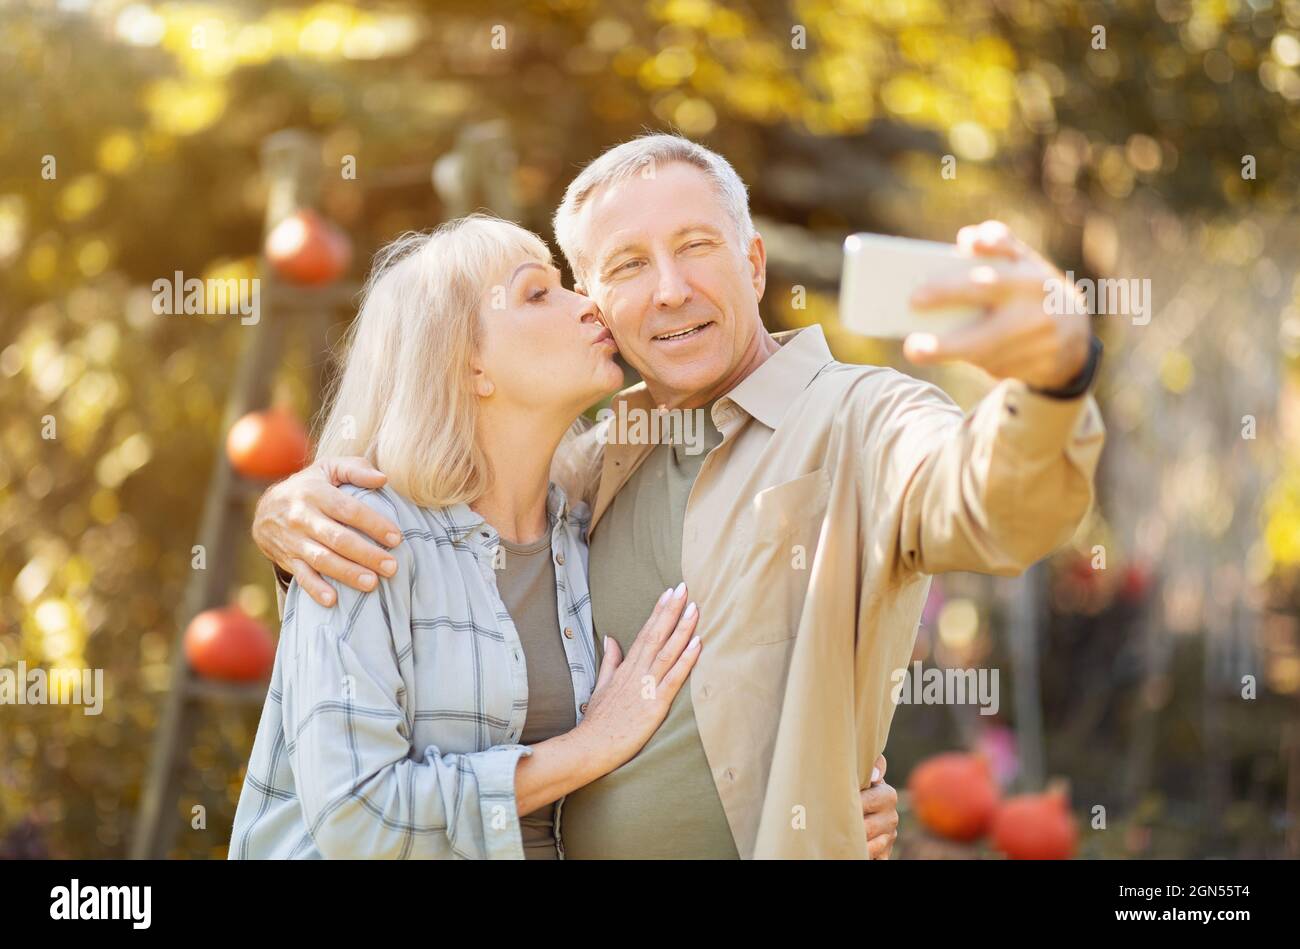 Coppia anziana che passa il tempo in giardino soleggiato insieme, prendendo selfie, donna baciando marito in guancia Foto Stock